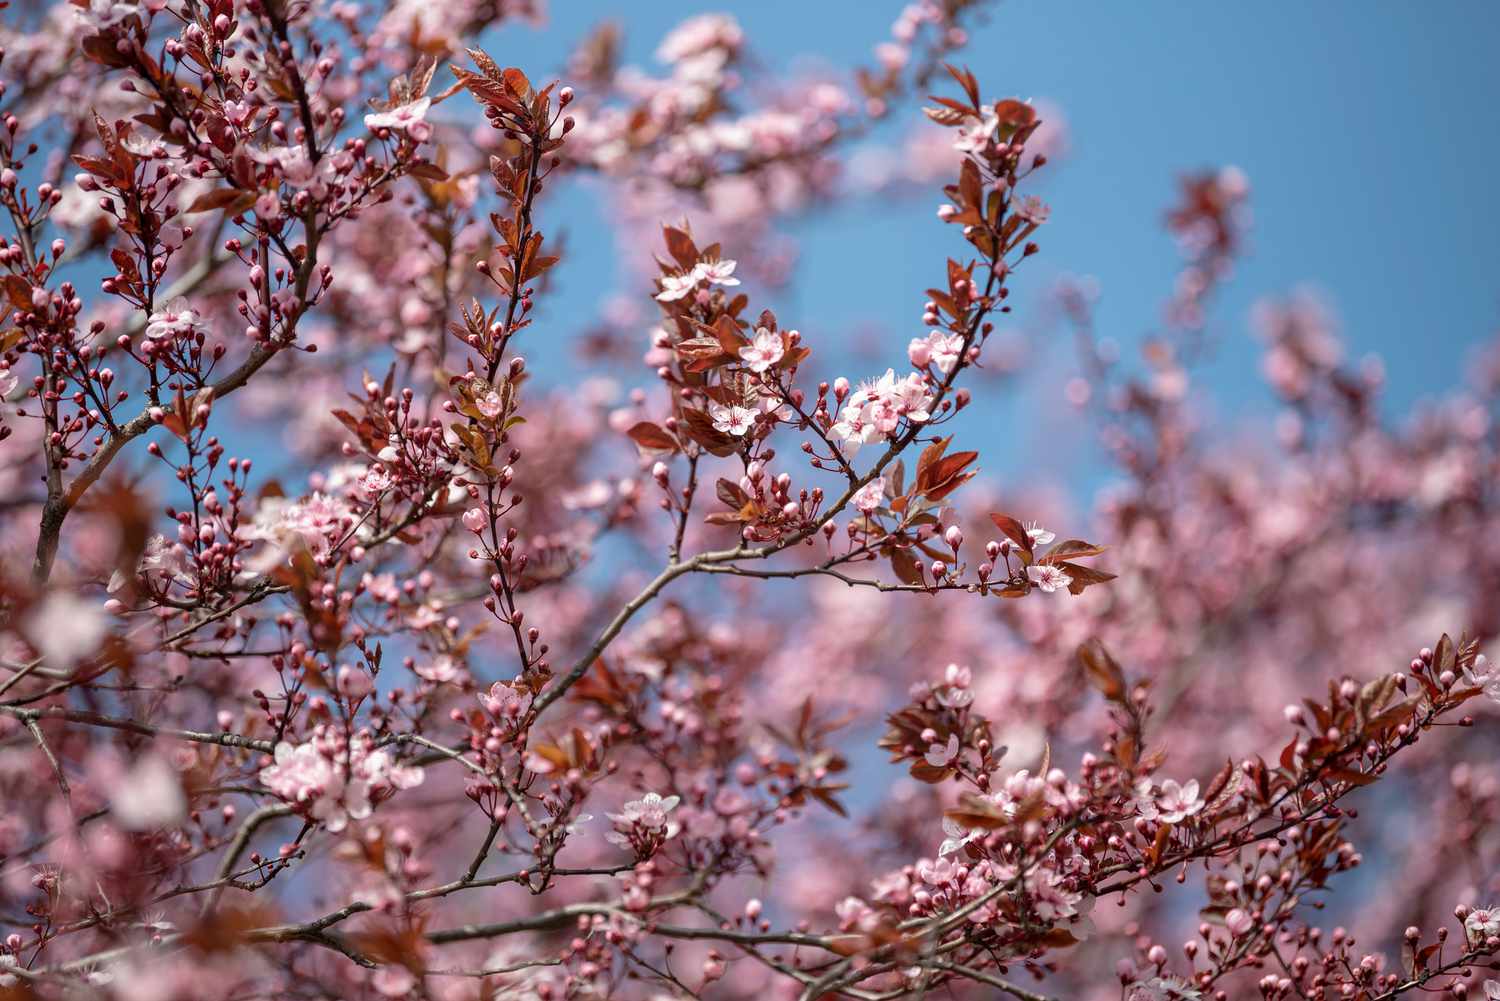 Lila belaubte Sandkirschbaumzweige mit kleinen rosa Blüten